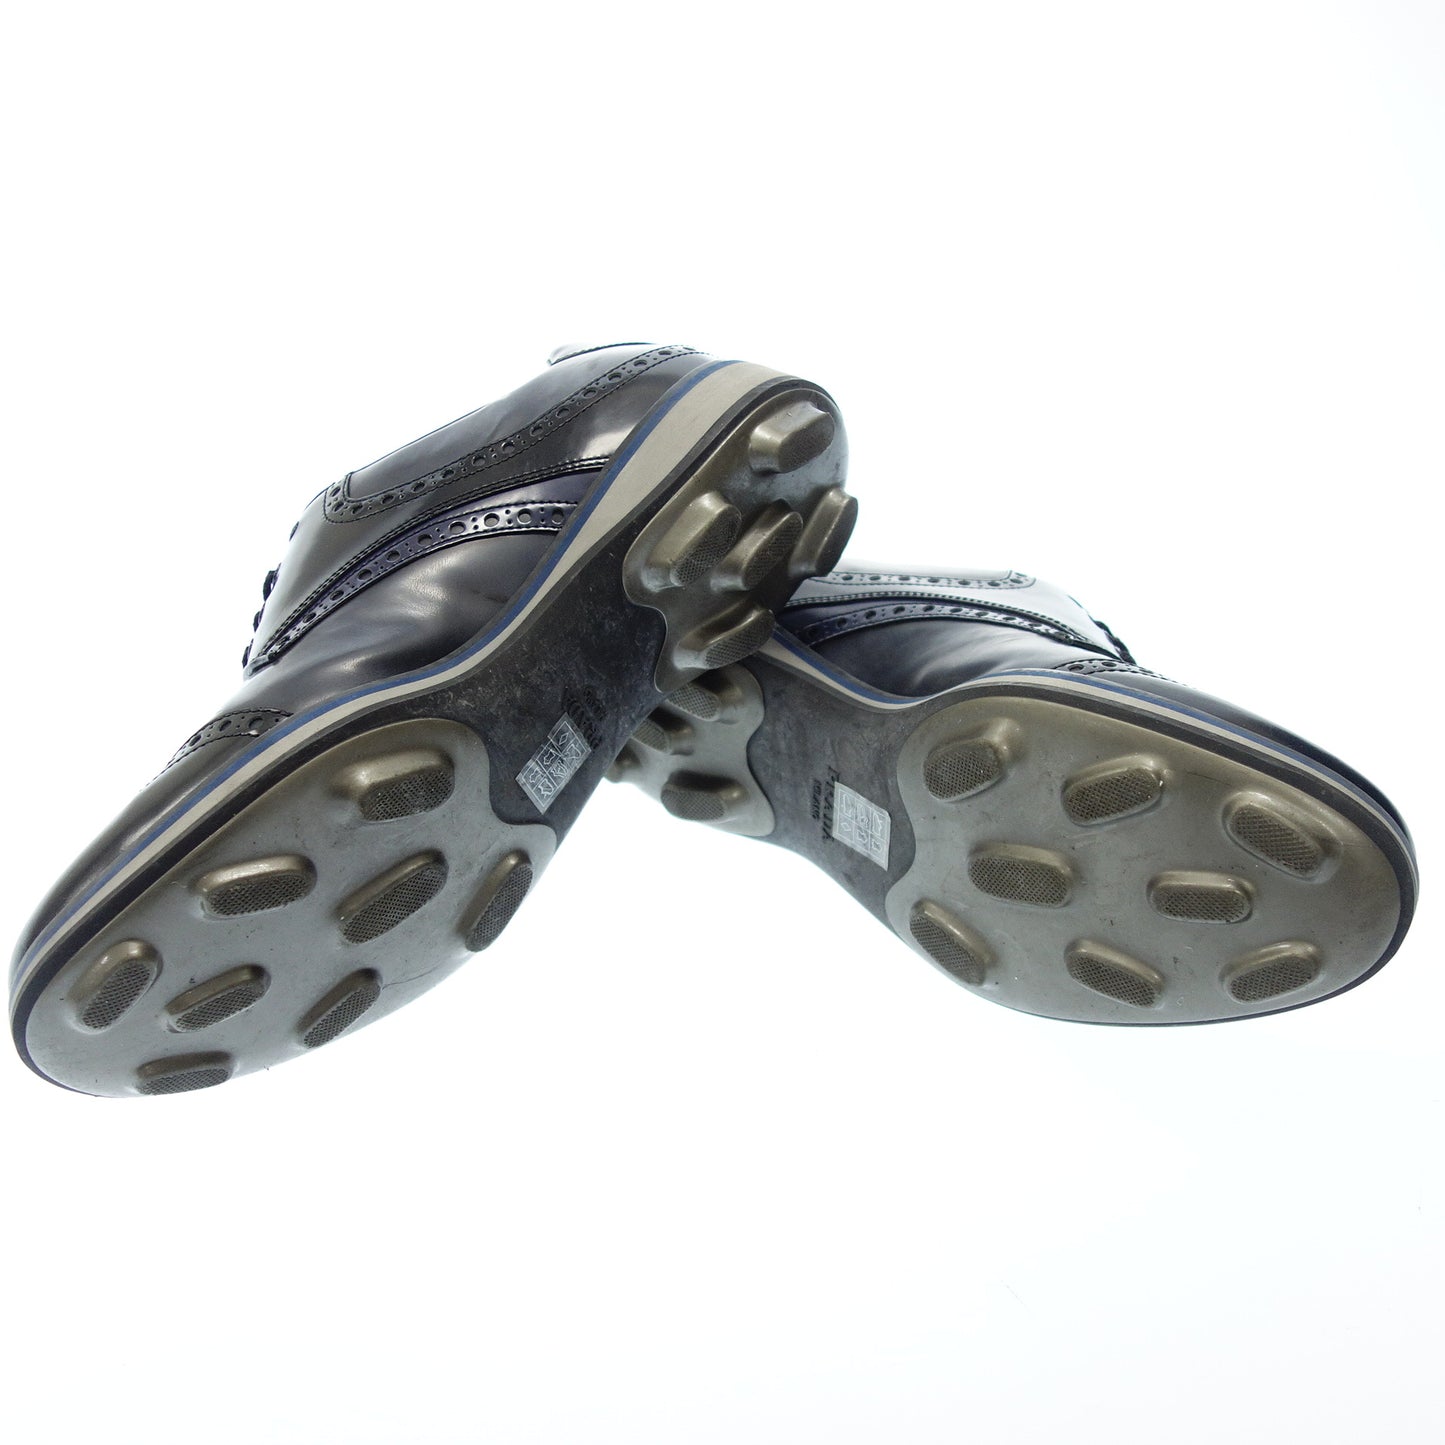 Prada leather shoes wingtip men's 8 bicolor PRADA [AFC21] [Used] 